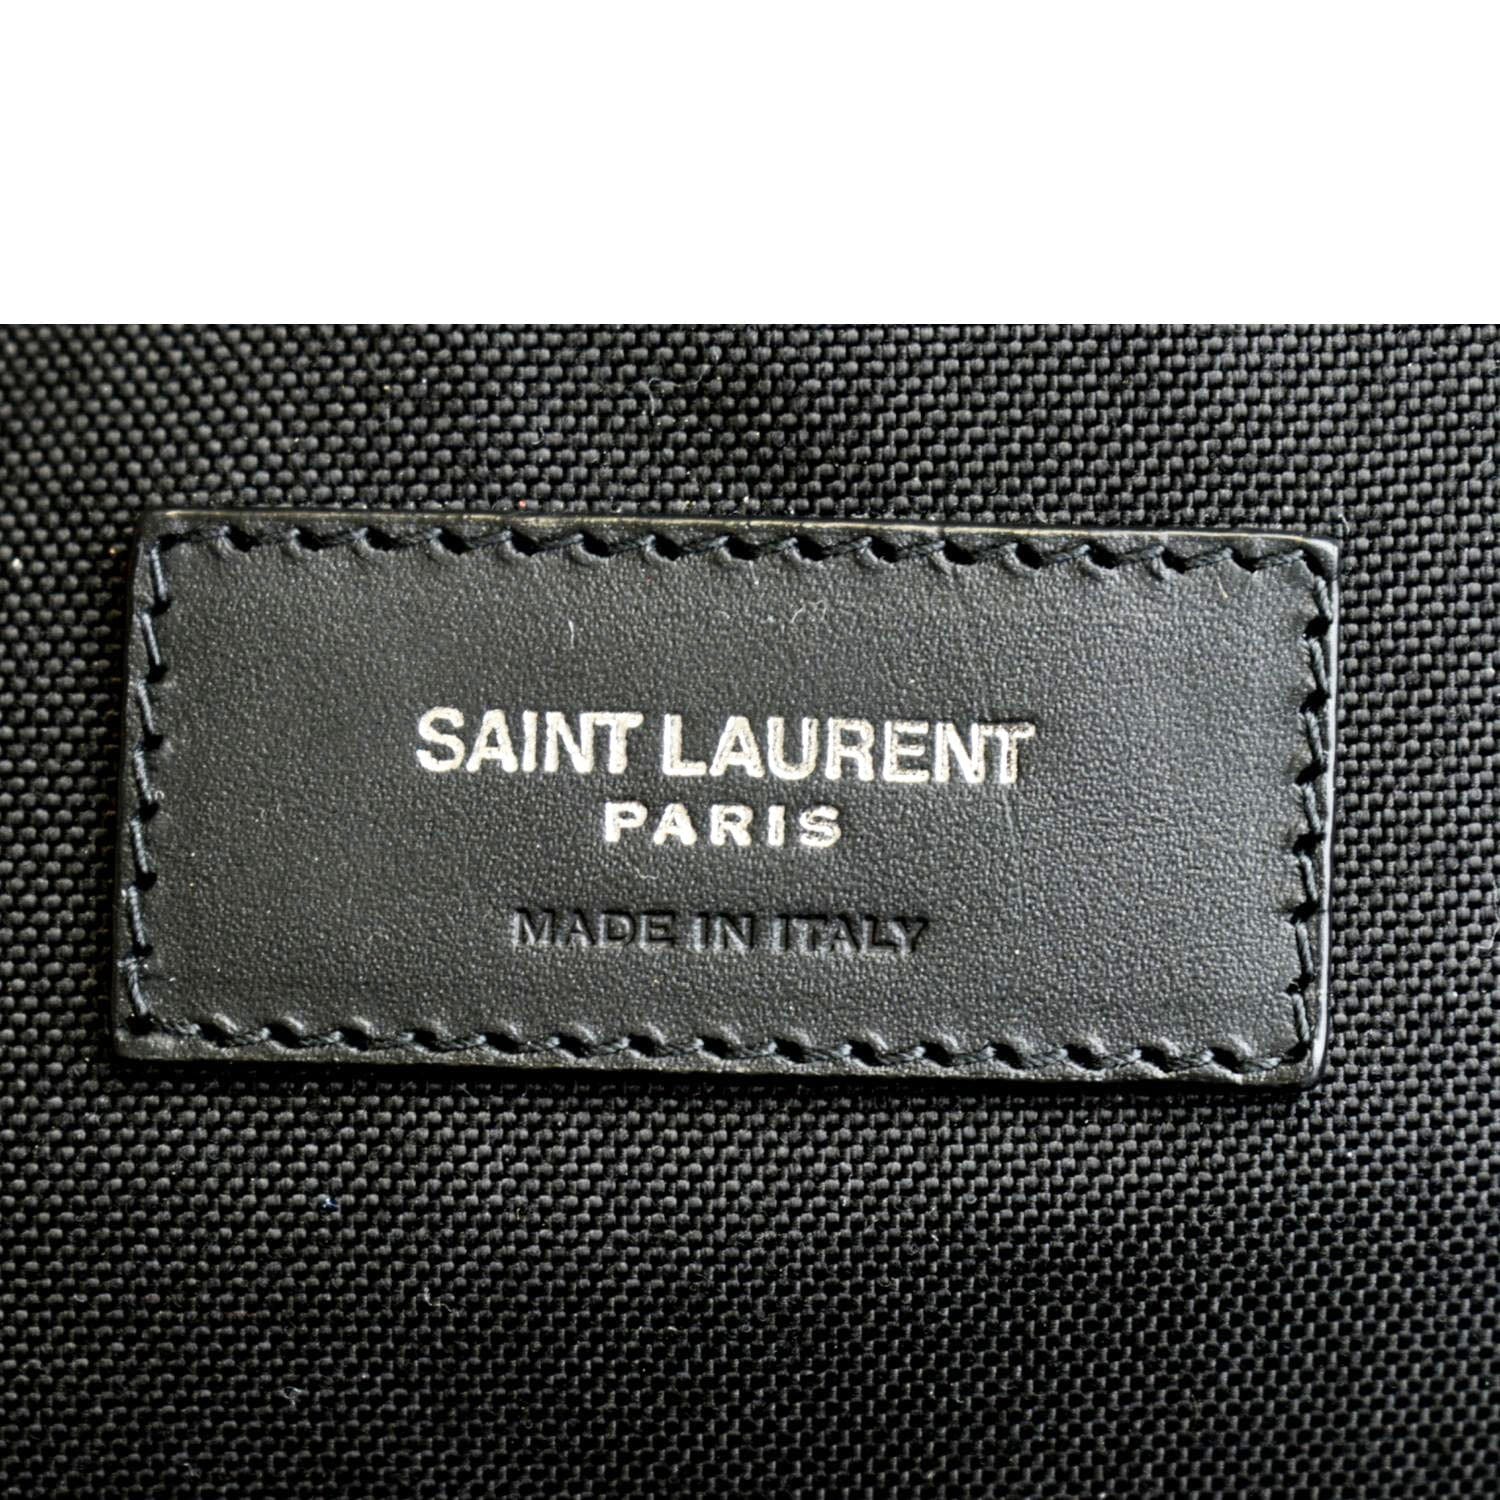 🆕️ Authentic SAINT LAURENT Paris CITY PALM TREE Print CITY